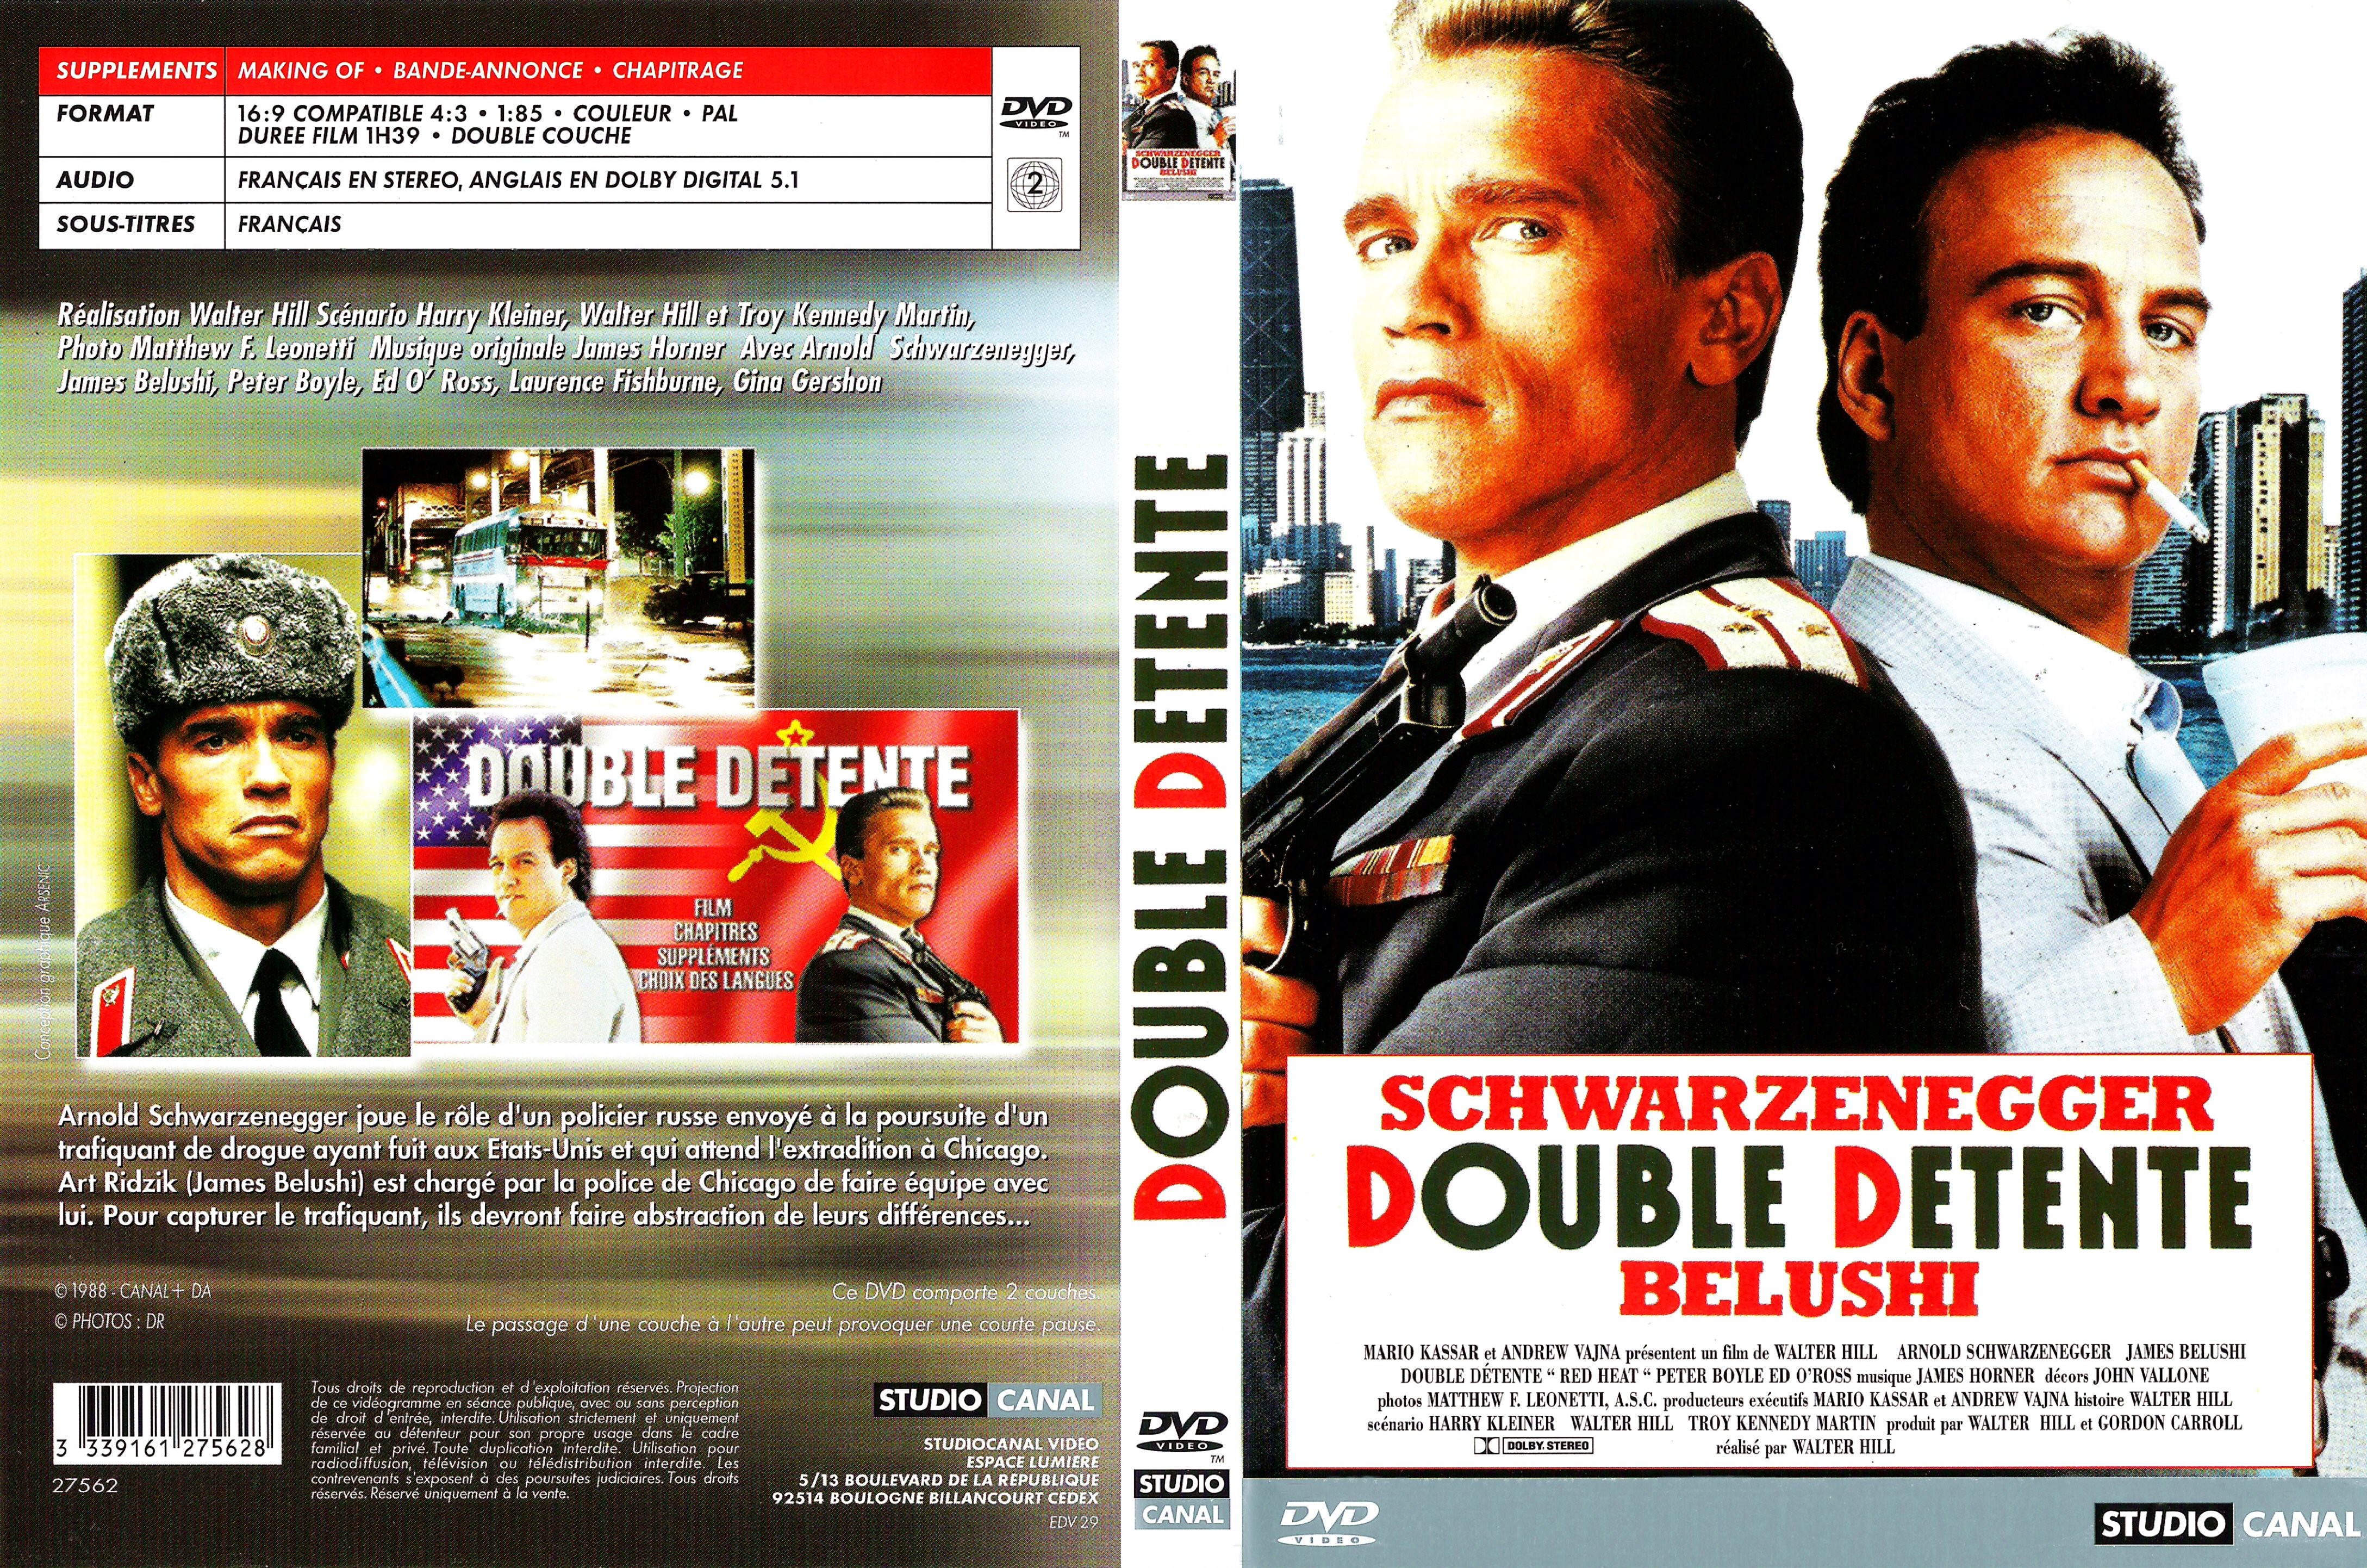 Jaquette DVD Double dtente v2